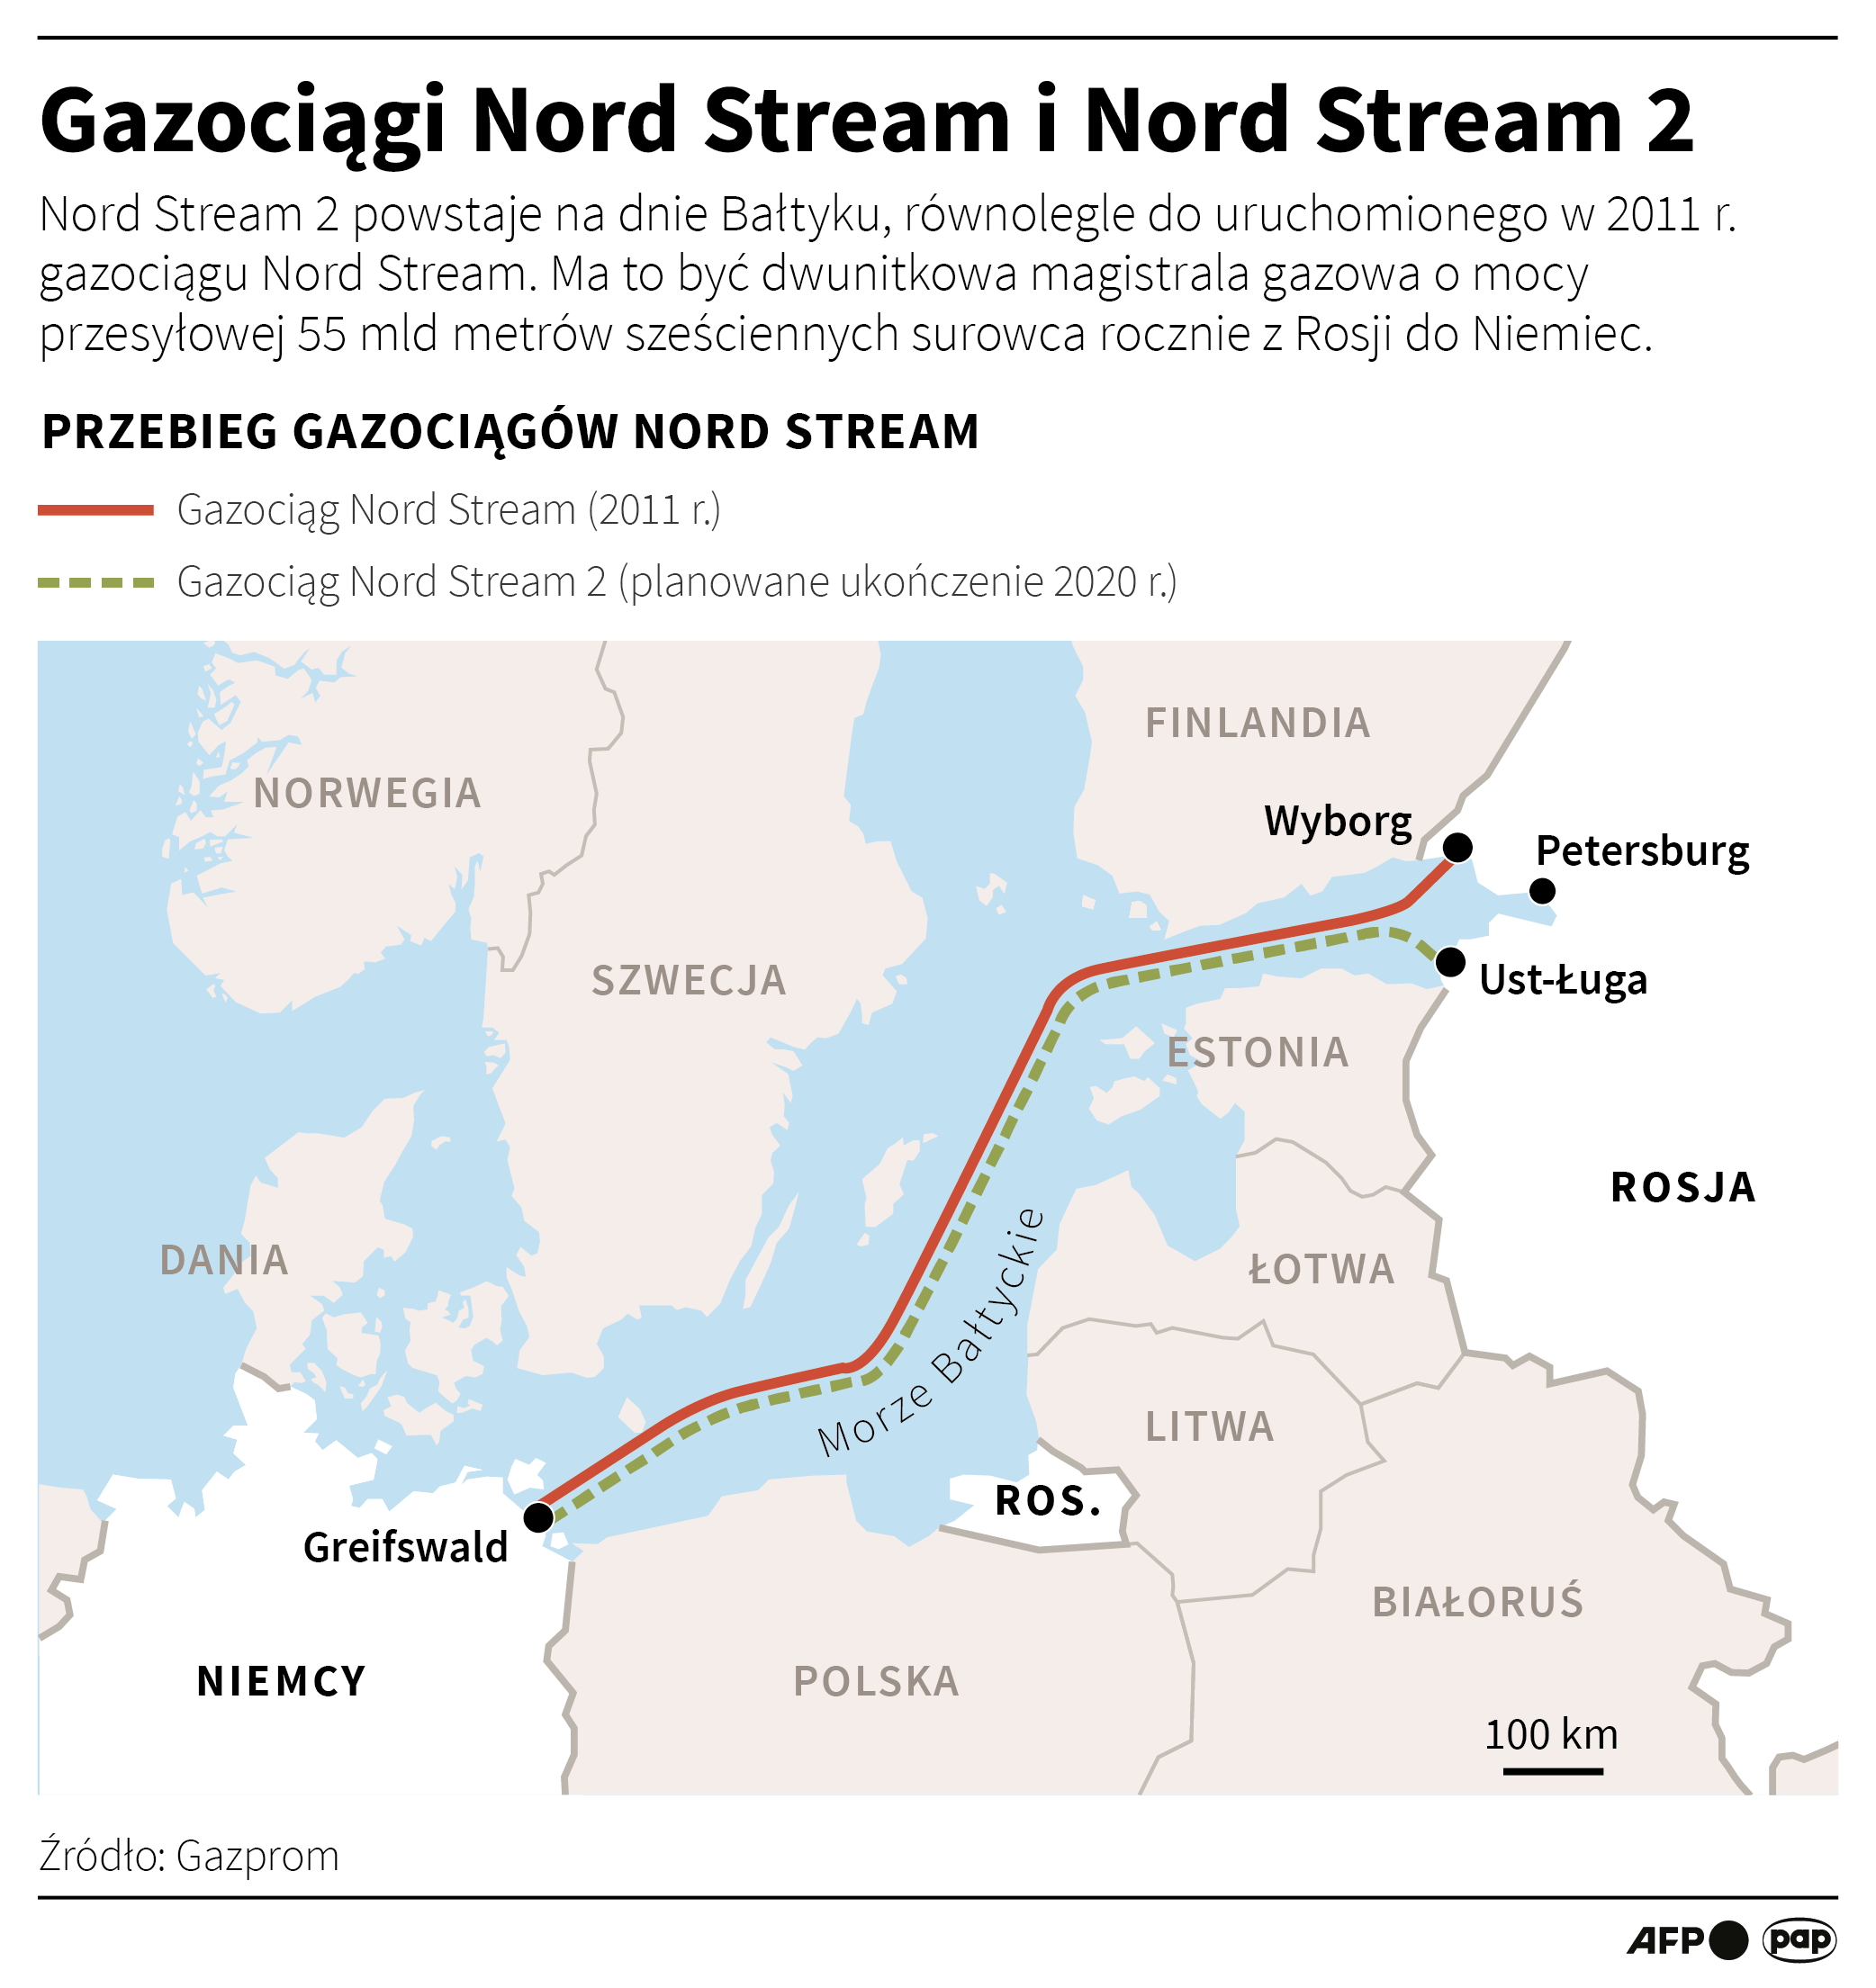 Gazociągi Nord Stream i Nord Stream 2 (opr. Adam Ziemienowicz, Maciej Zieliński/PAP)